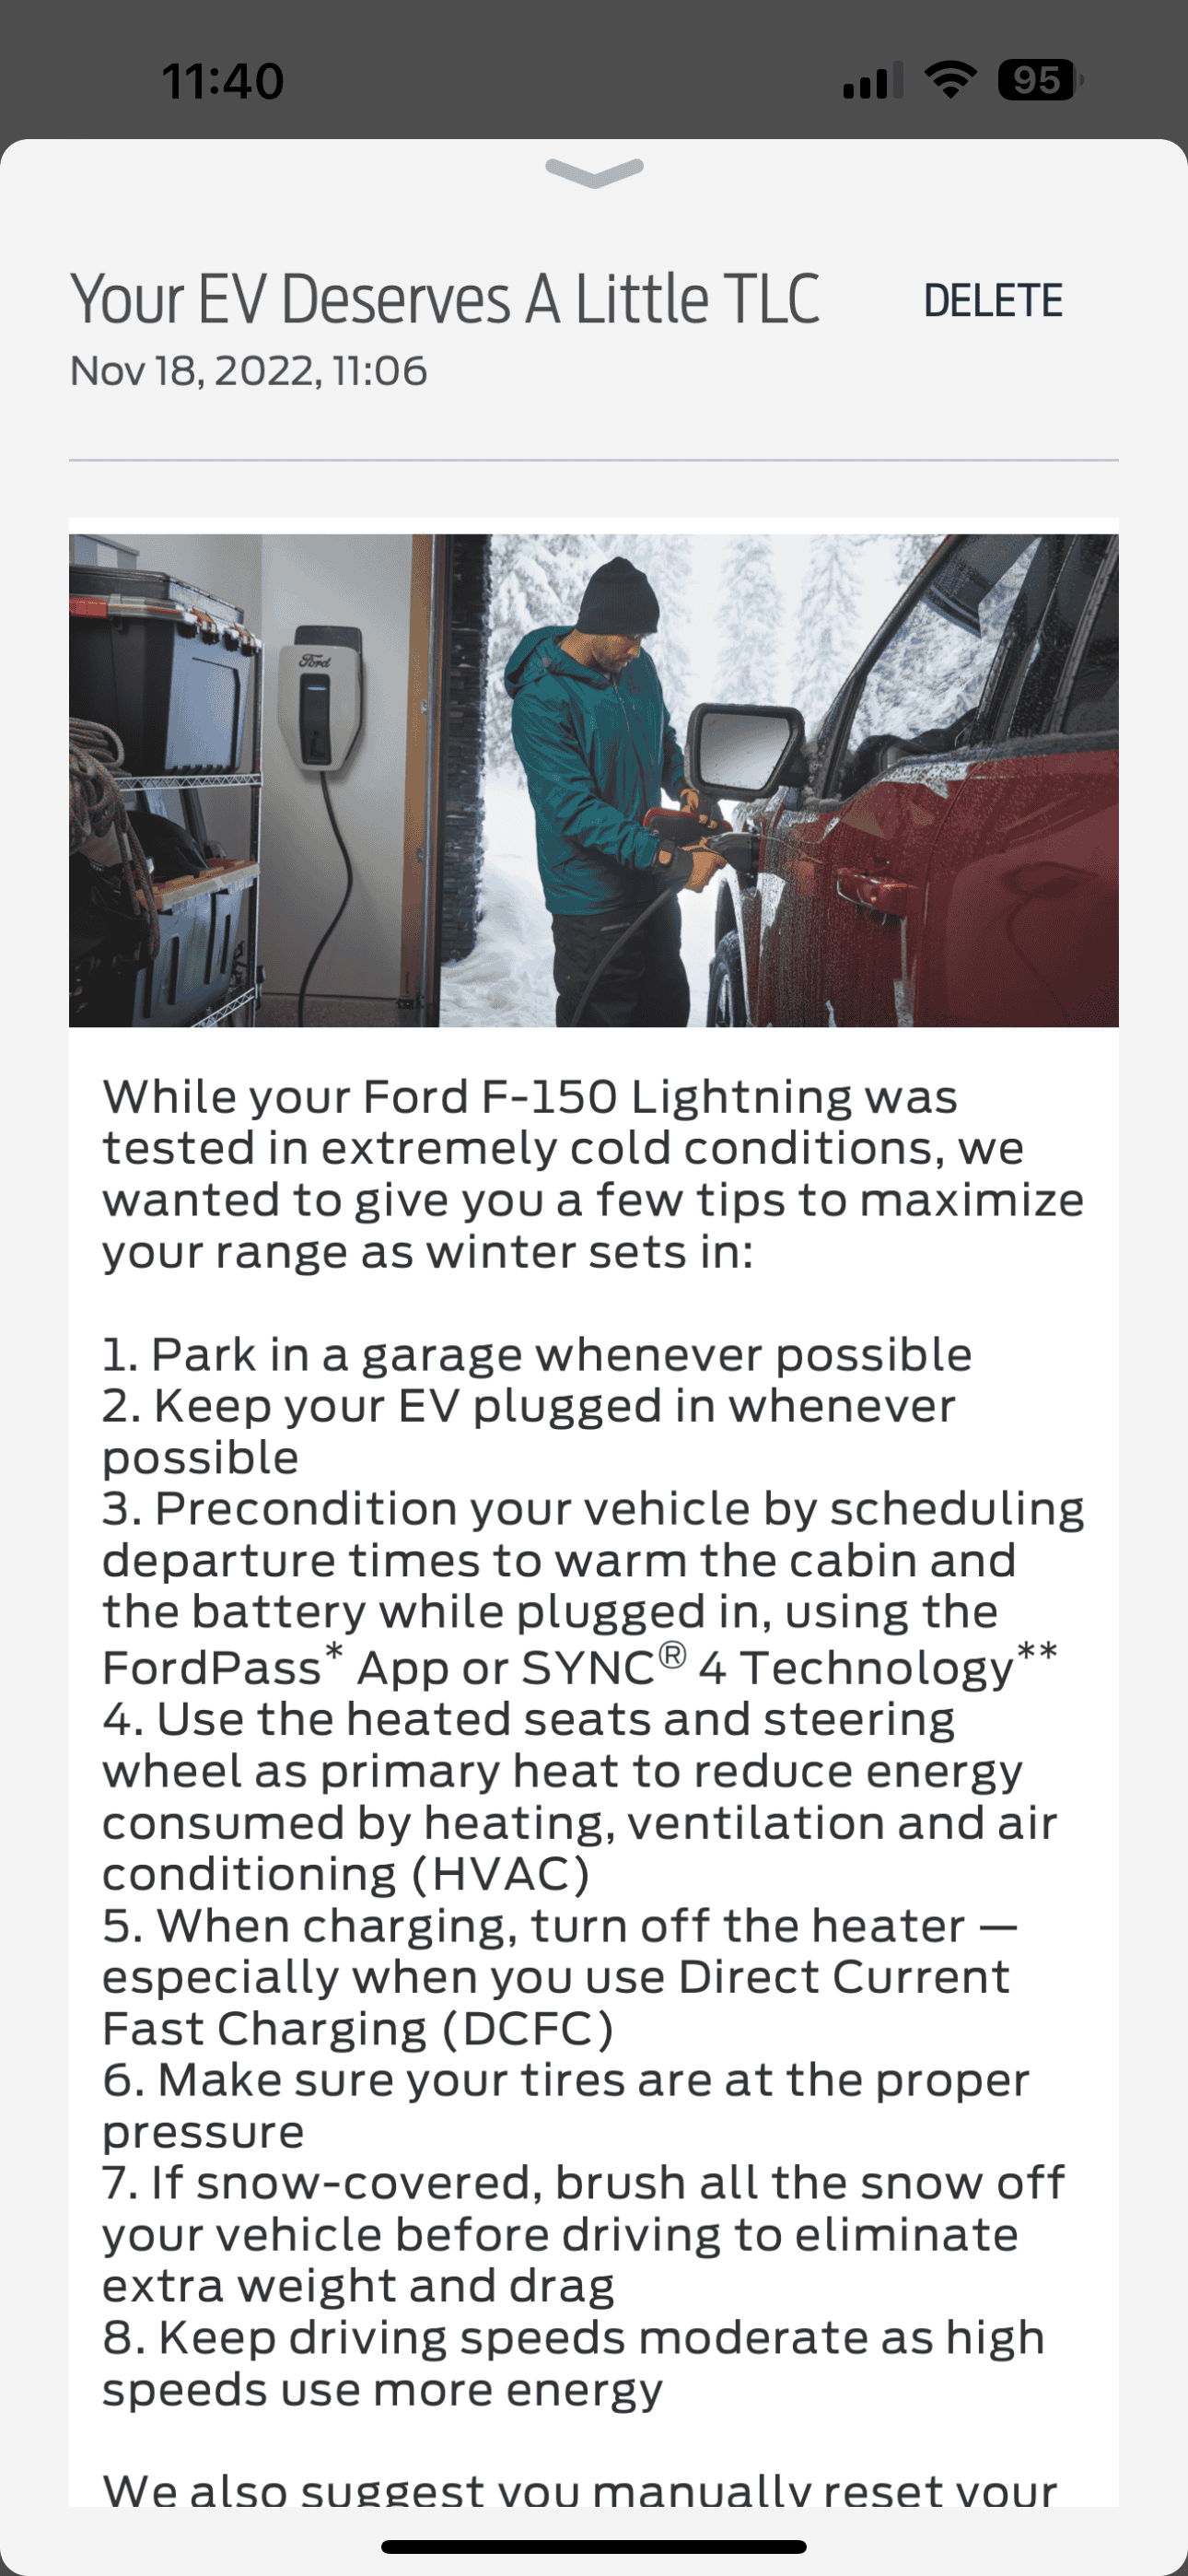 Ford F-150 Lightning Lightning Battery Heating 4233CD62-BAF5-4FDD-B83F-6061FE1C5EEF